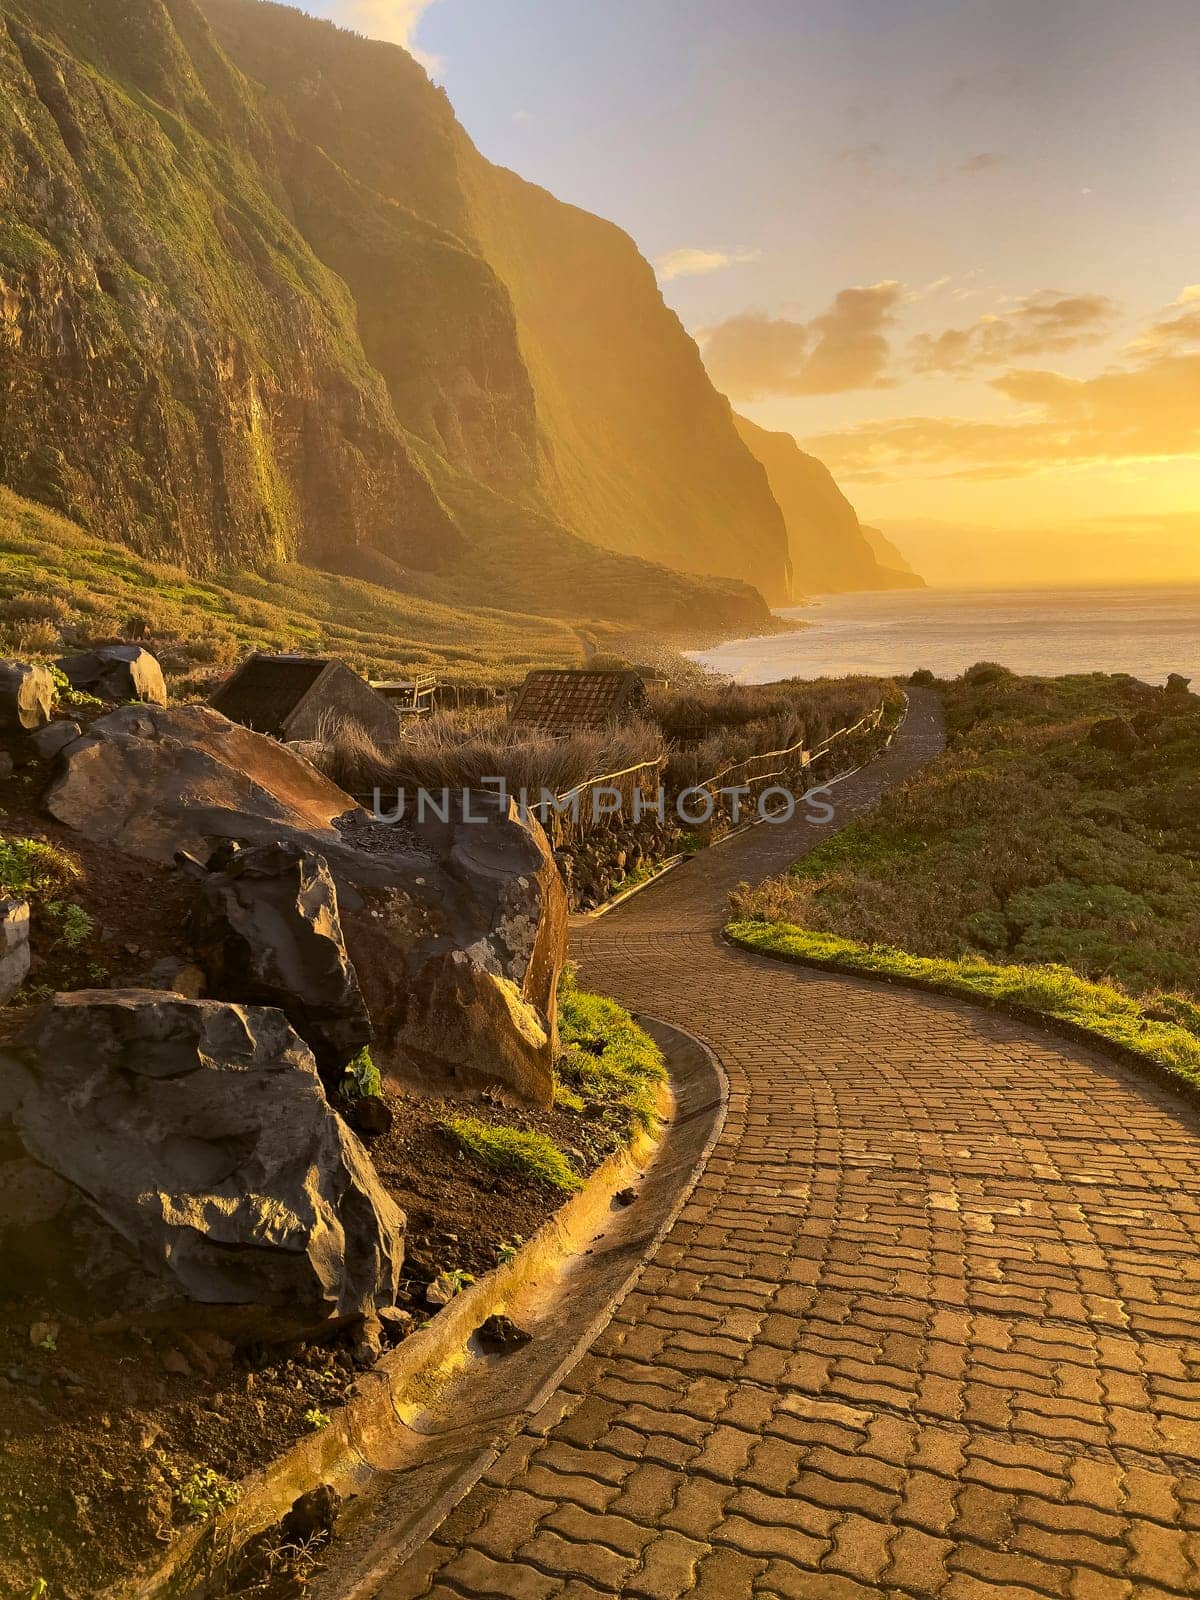 Achadas da cruz village stone path sunset view in Porto Moniz district, Madeira, Portugal